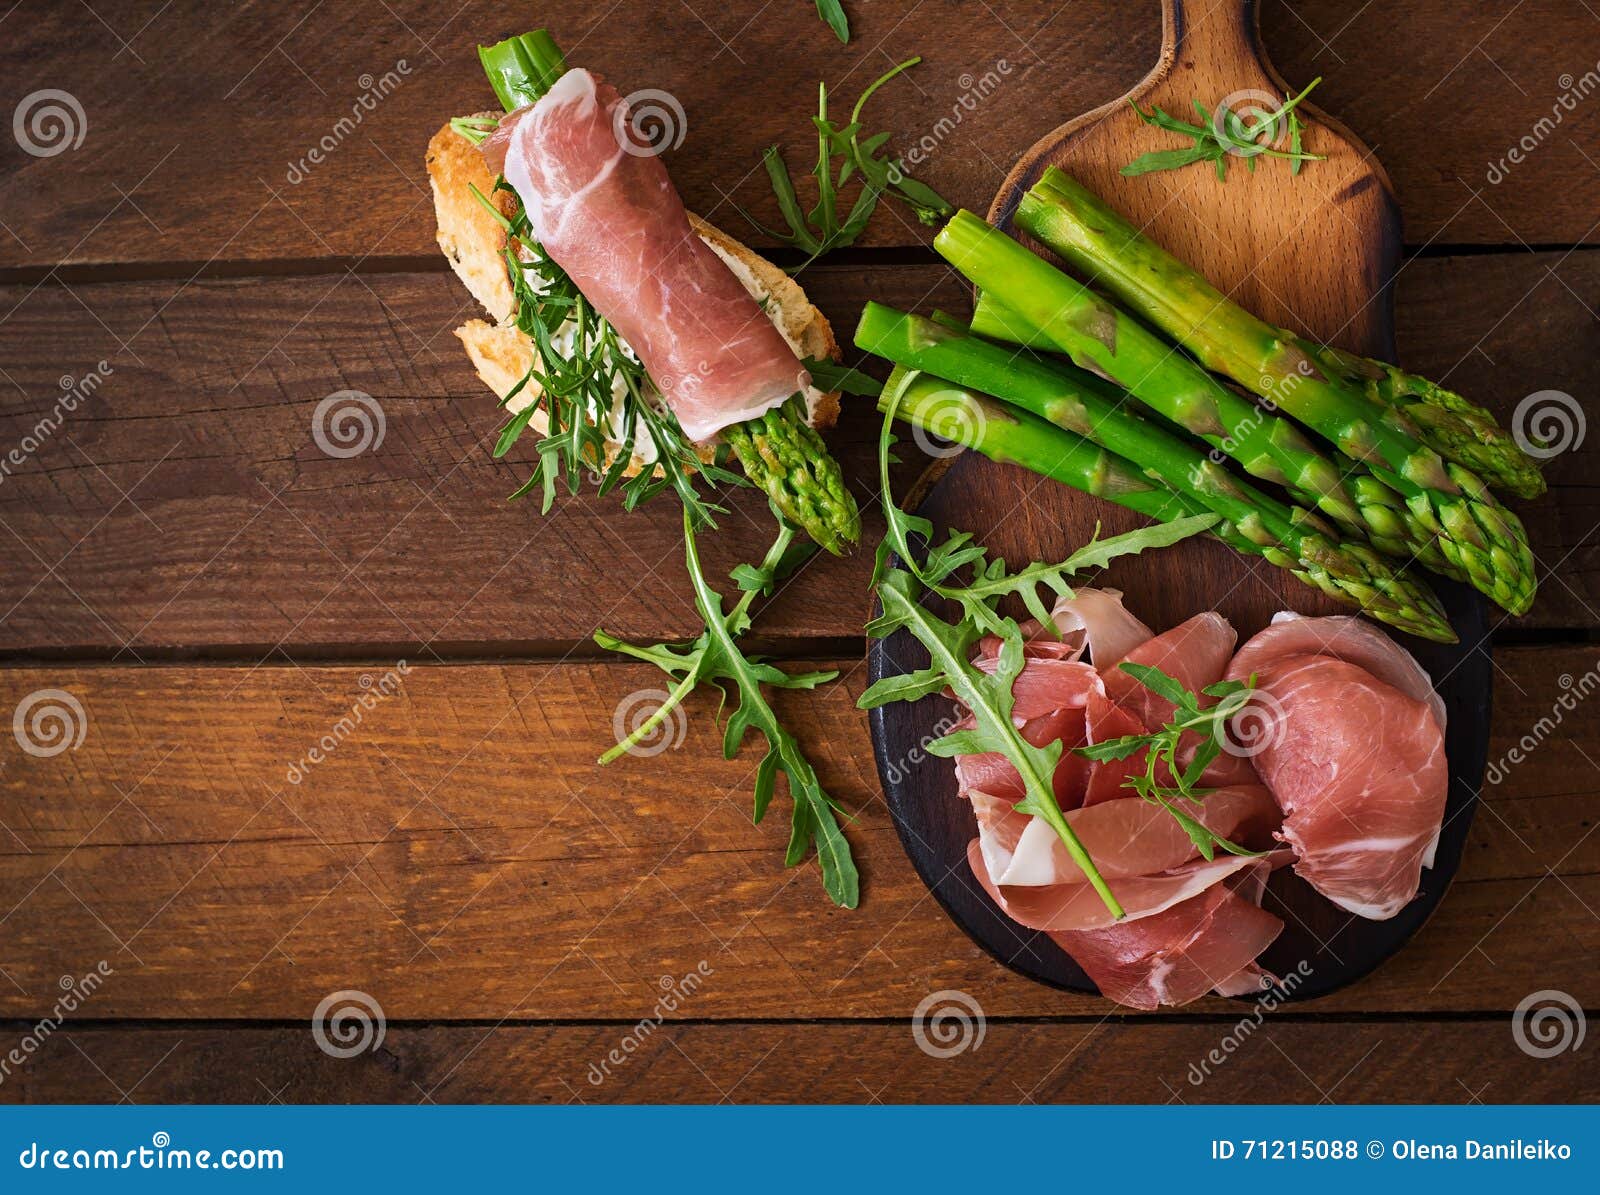 parma ham, asparagus and arugula